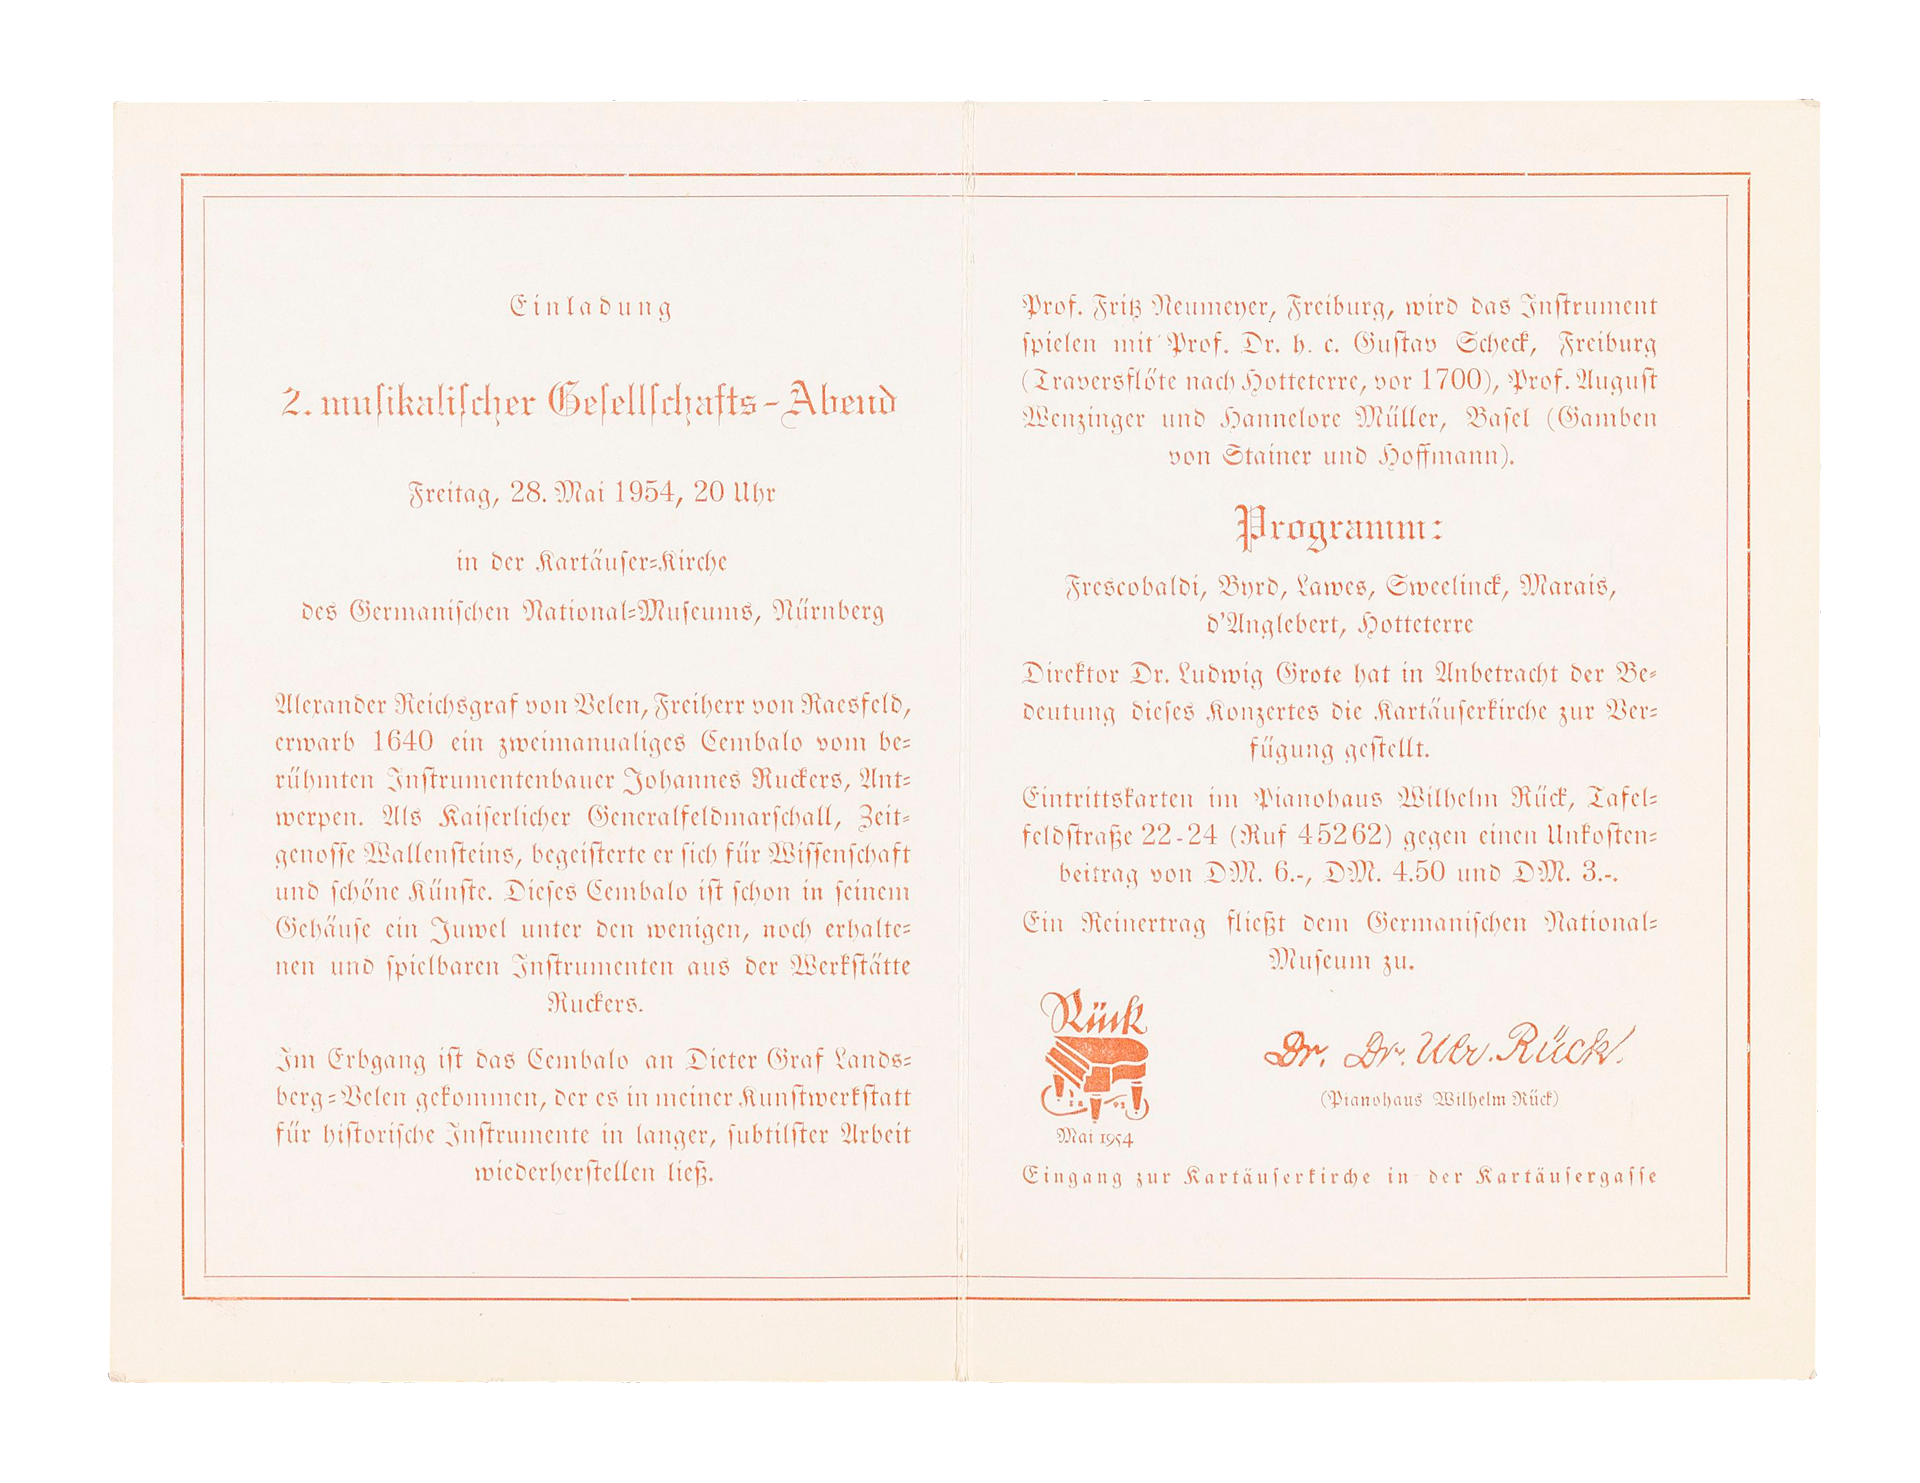 Einladung zum Konzert auf dem von Otto Marx restaurierten Ruckers-Cembalo, 1954